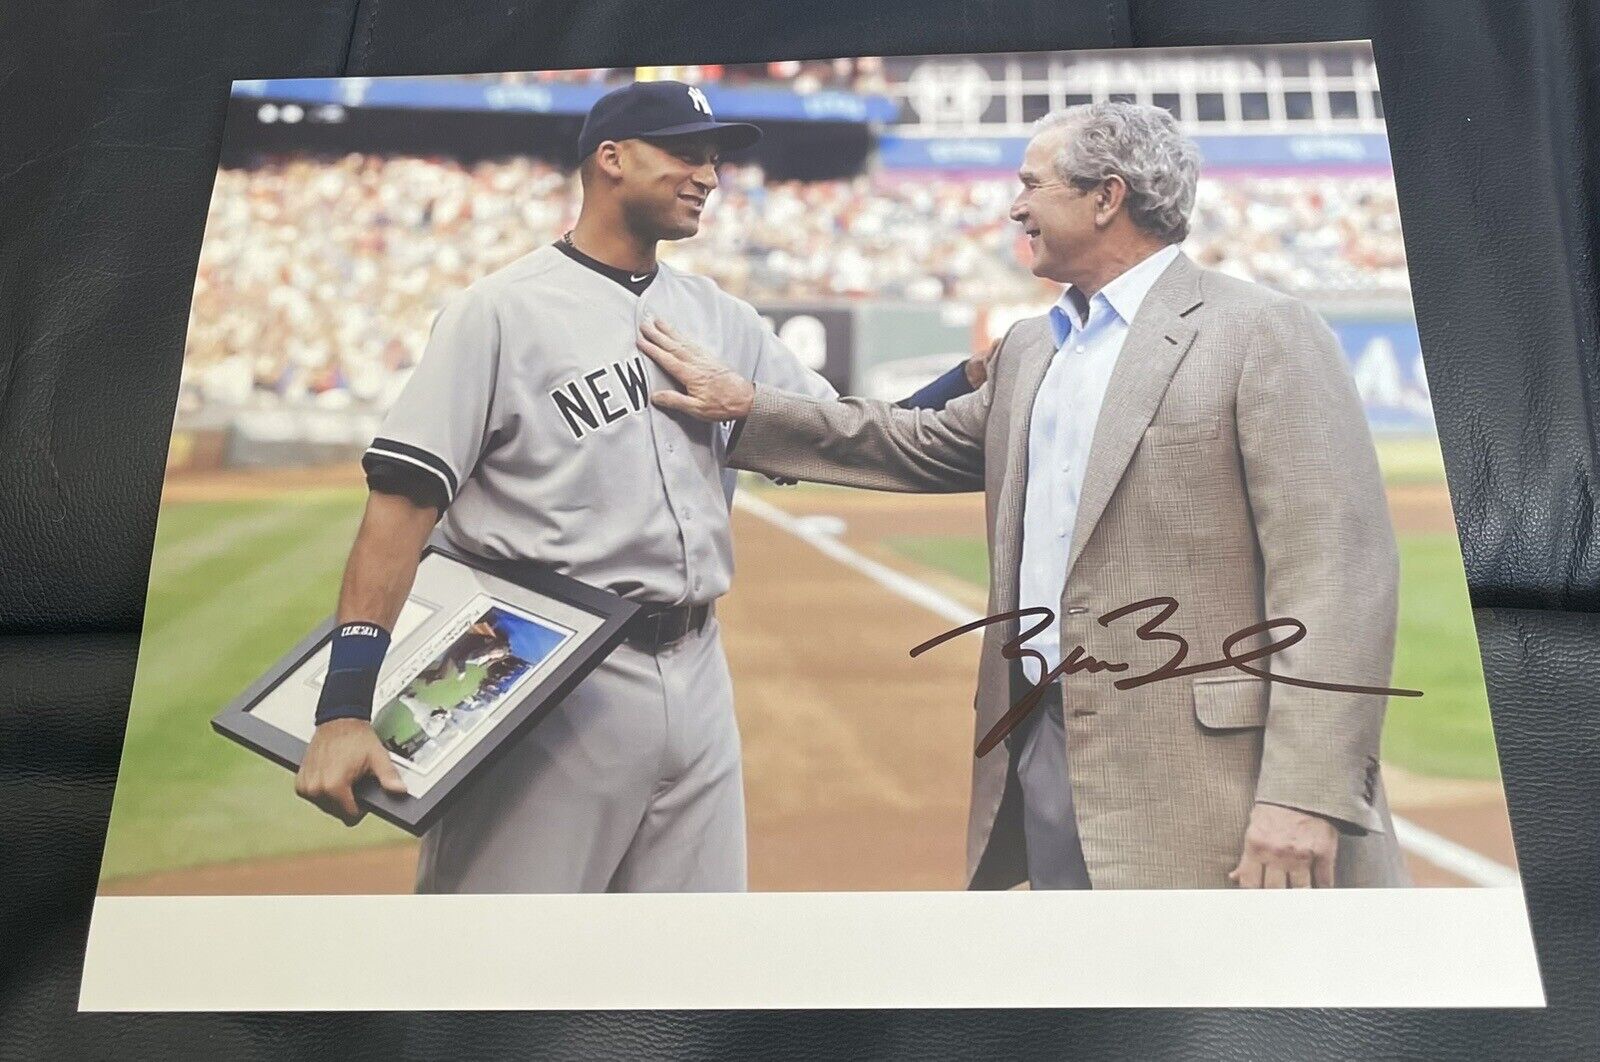 George W. Bush Jr Autograph with Derek Jeter